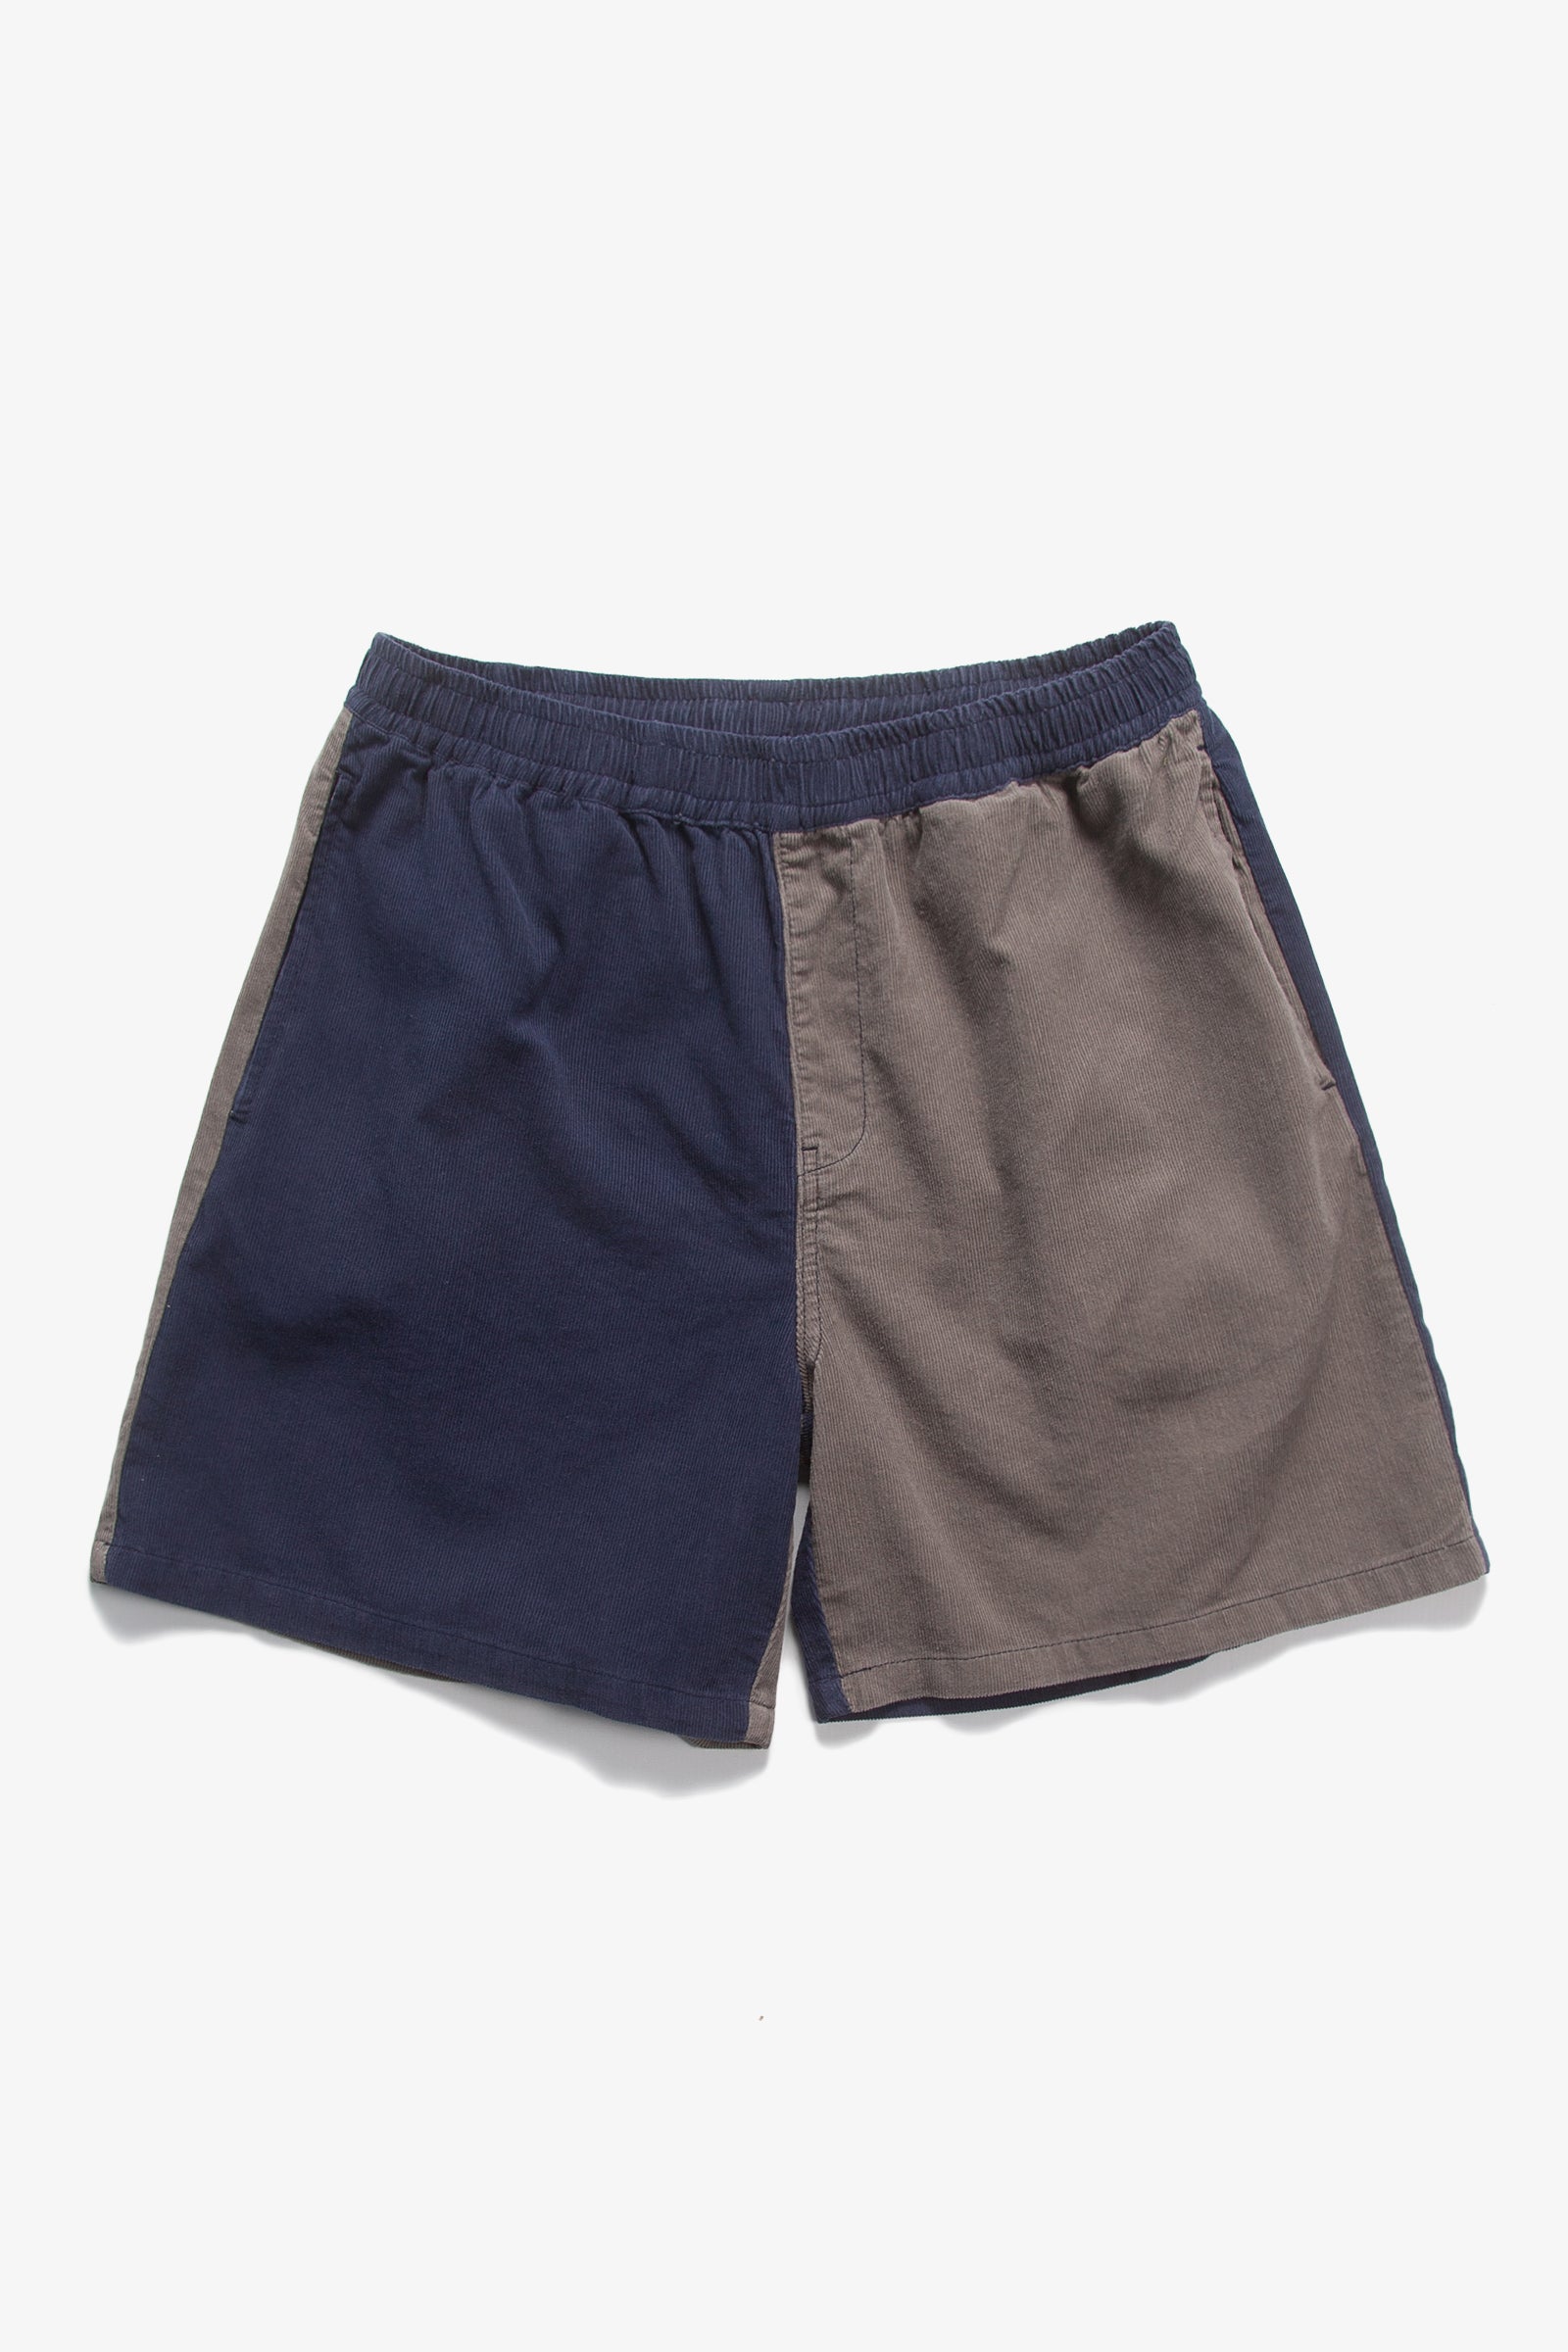 Blacksmith - Corduroy Easy Shorts - Navy/Grey